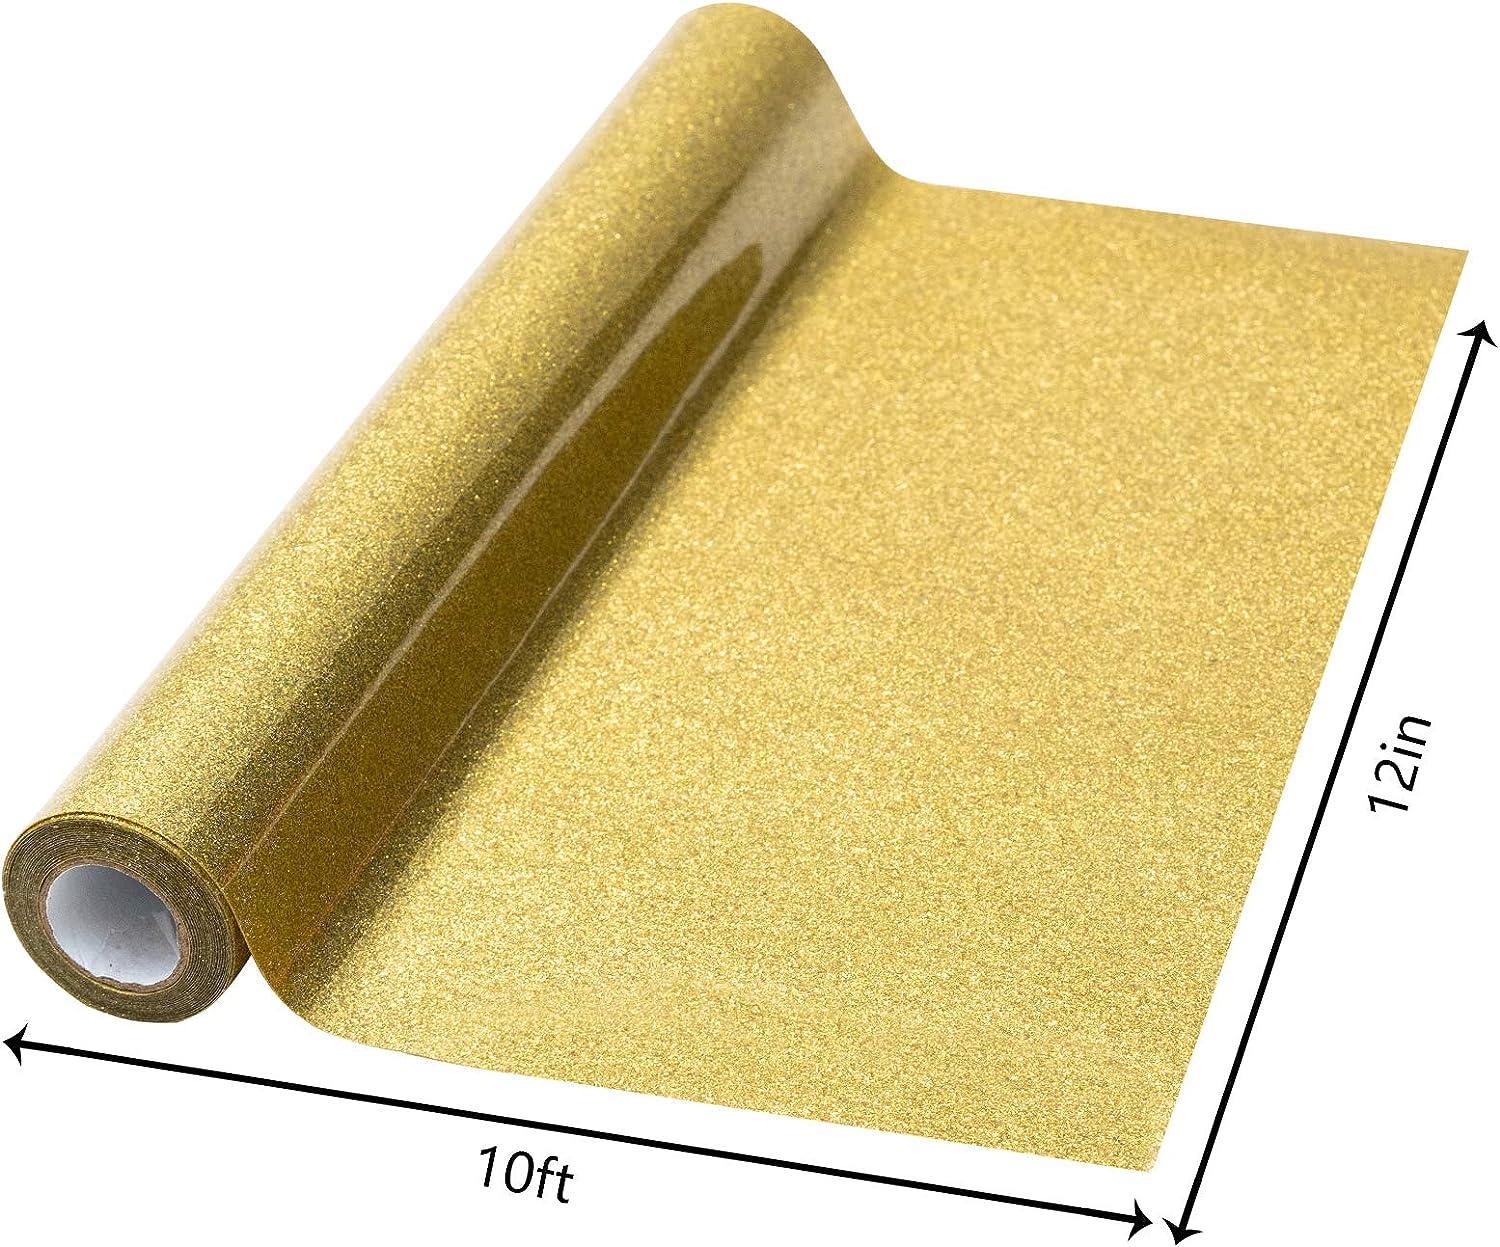 HTVRONT Gold Glitter Heat Transfer Vinyl - 12 x 10ft Gold Glitter Iron on  Vinyl for Shirts, Glitter HTV Vinyl Rolls for Heat Vinyl Design